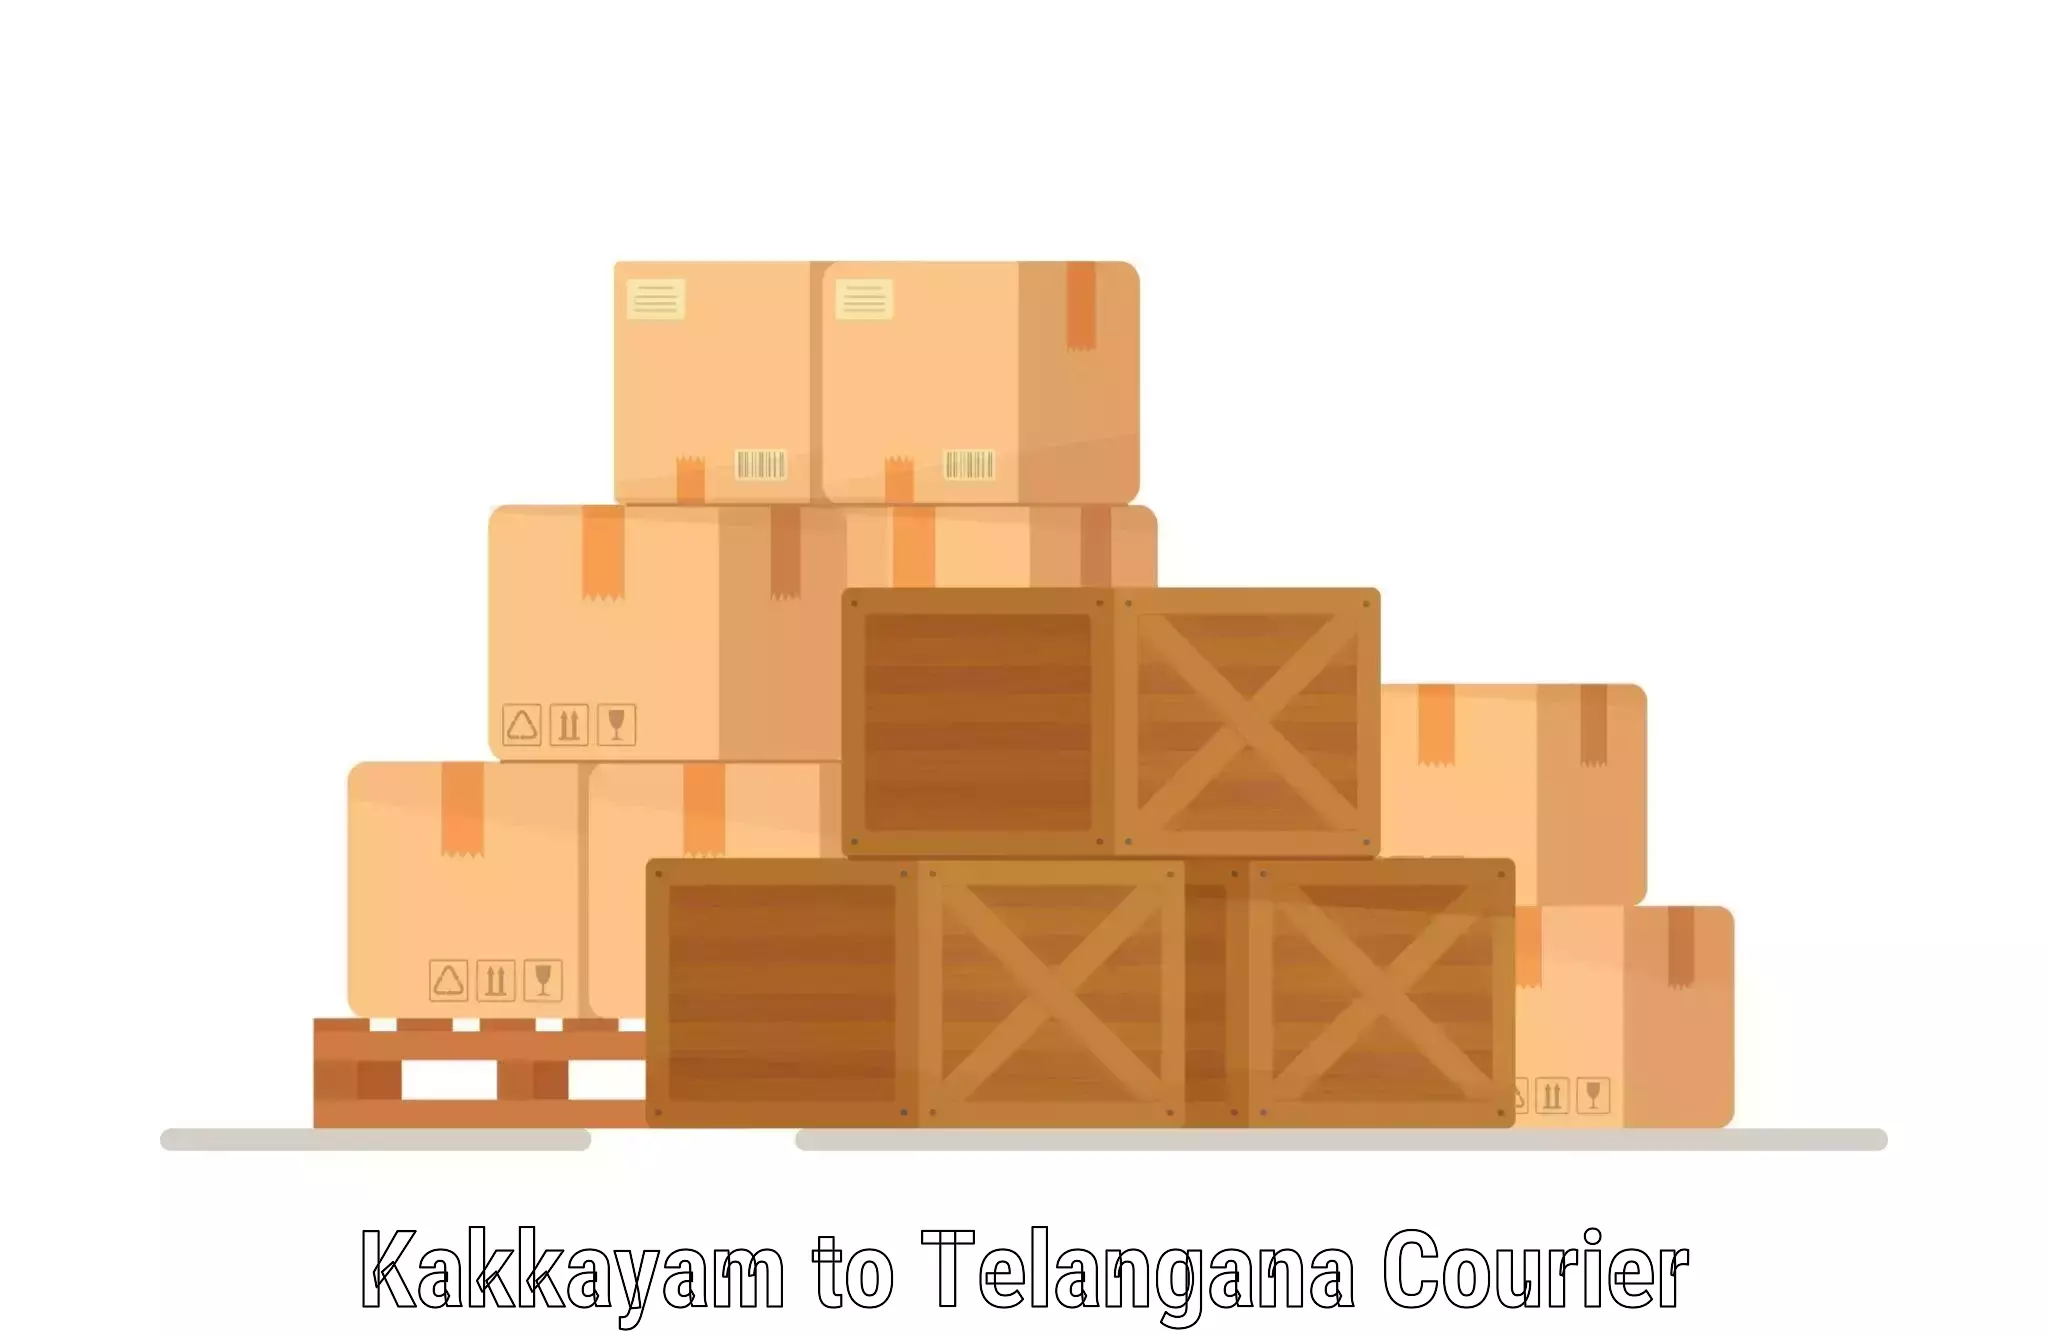 Ocean freight courier Kakkayam to Kothakota